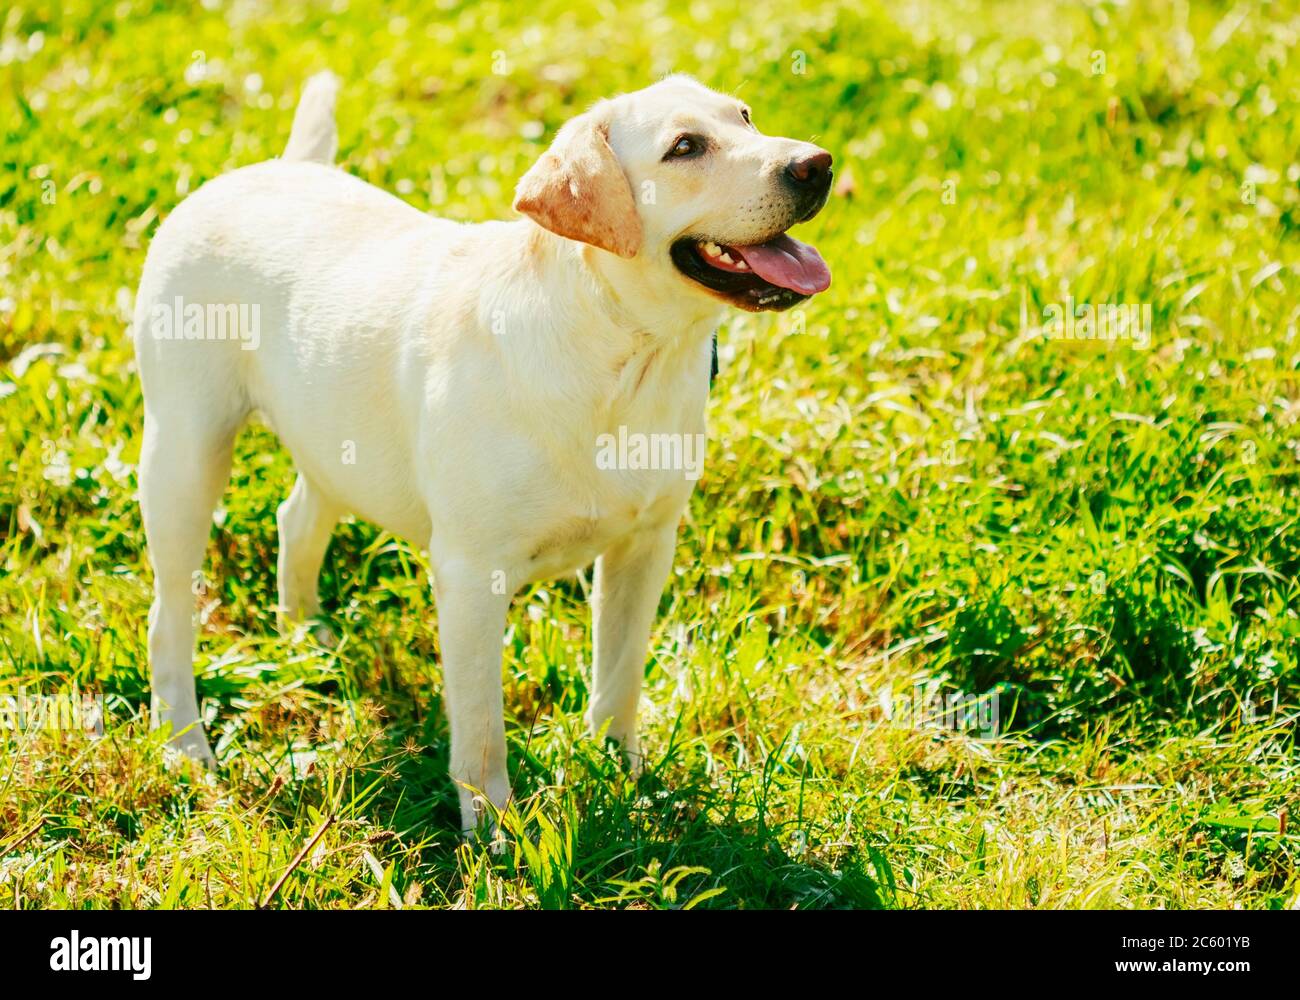 https://c8.alamy.com/comp/2C601YB/white-labrador-retriever-dog-standing-on-green-grass-outdoor-2C601YB.jpg